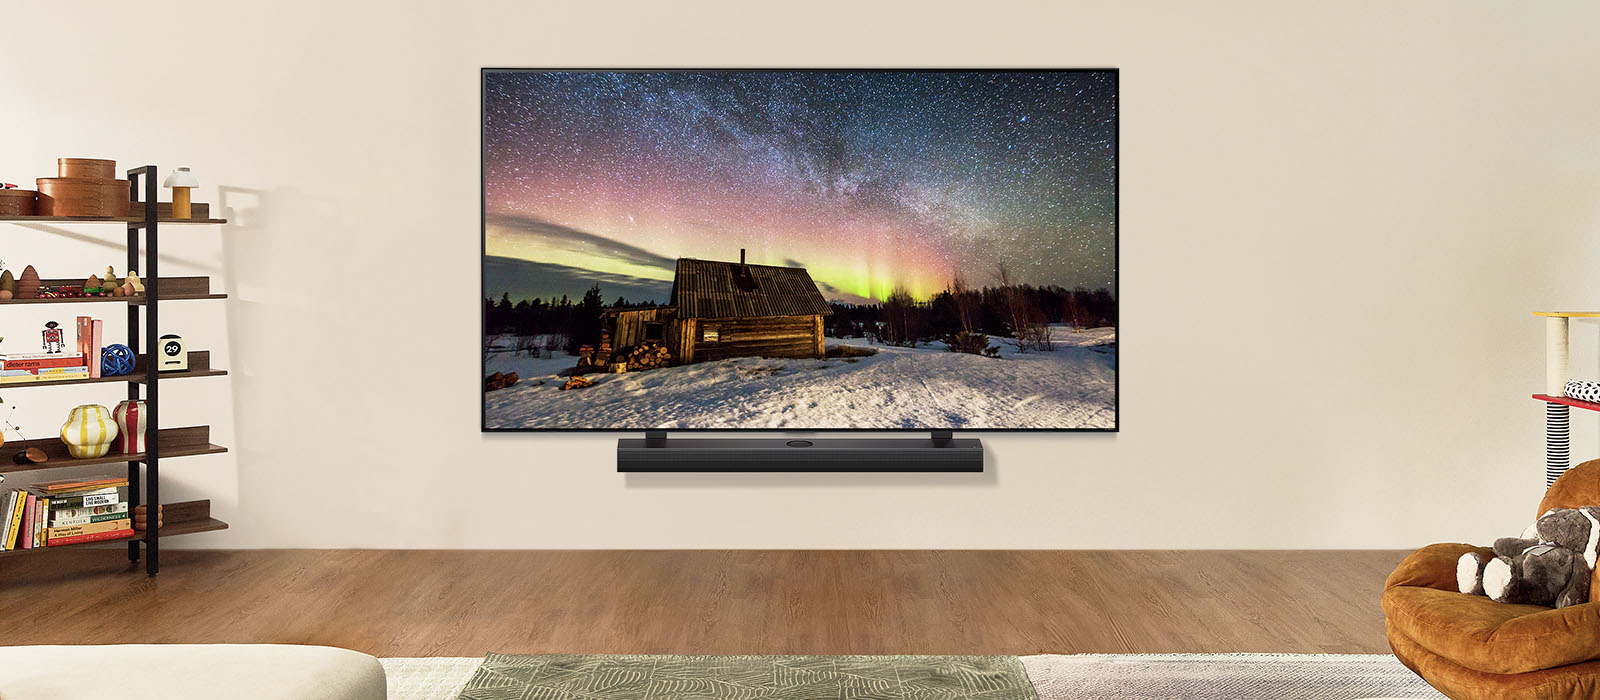  Un LG TV OLED et une barre de son LG dans un salon moderne pendant la journée. L’écran affiche une image de l’aurore boréale avec une luminosité idéale.